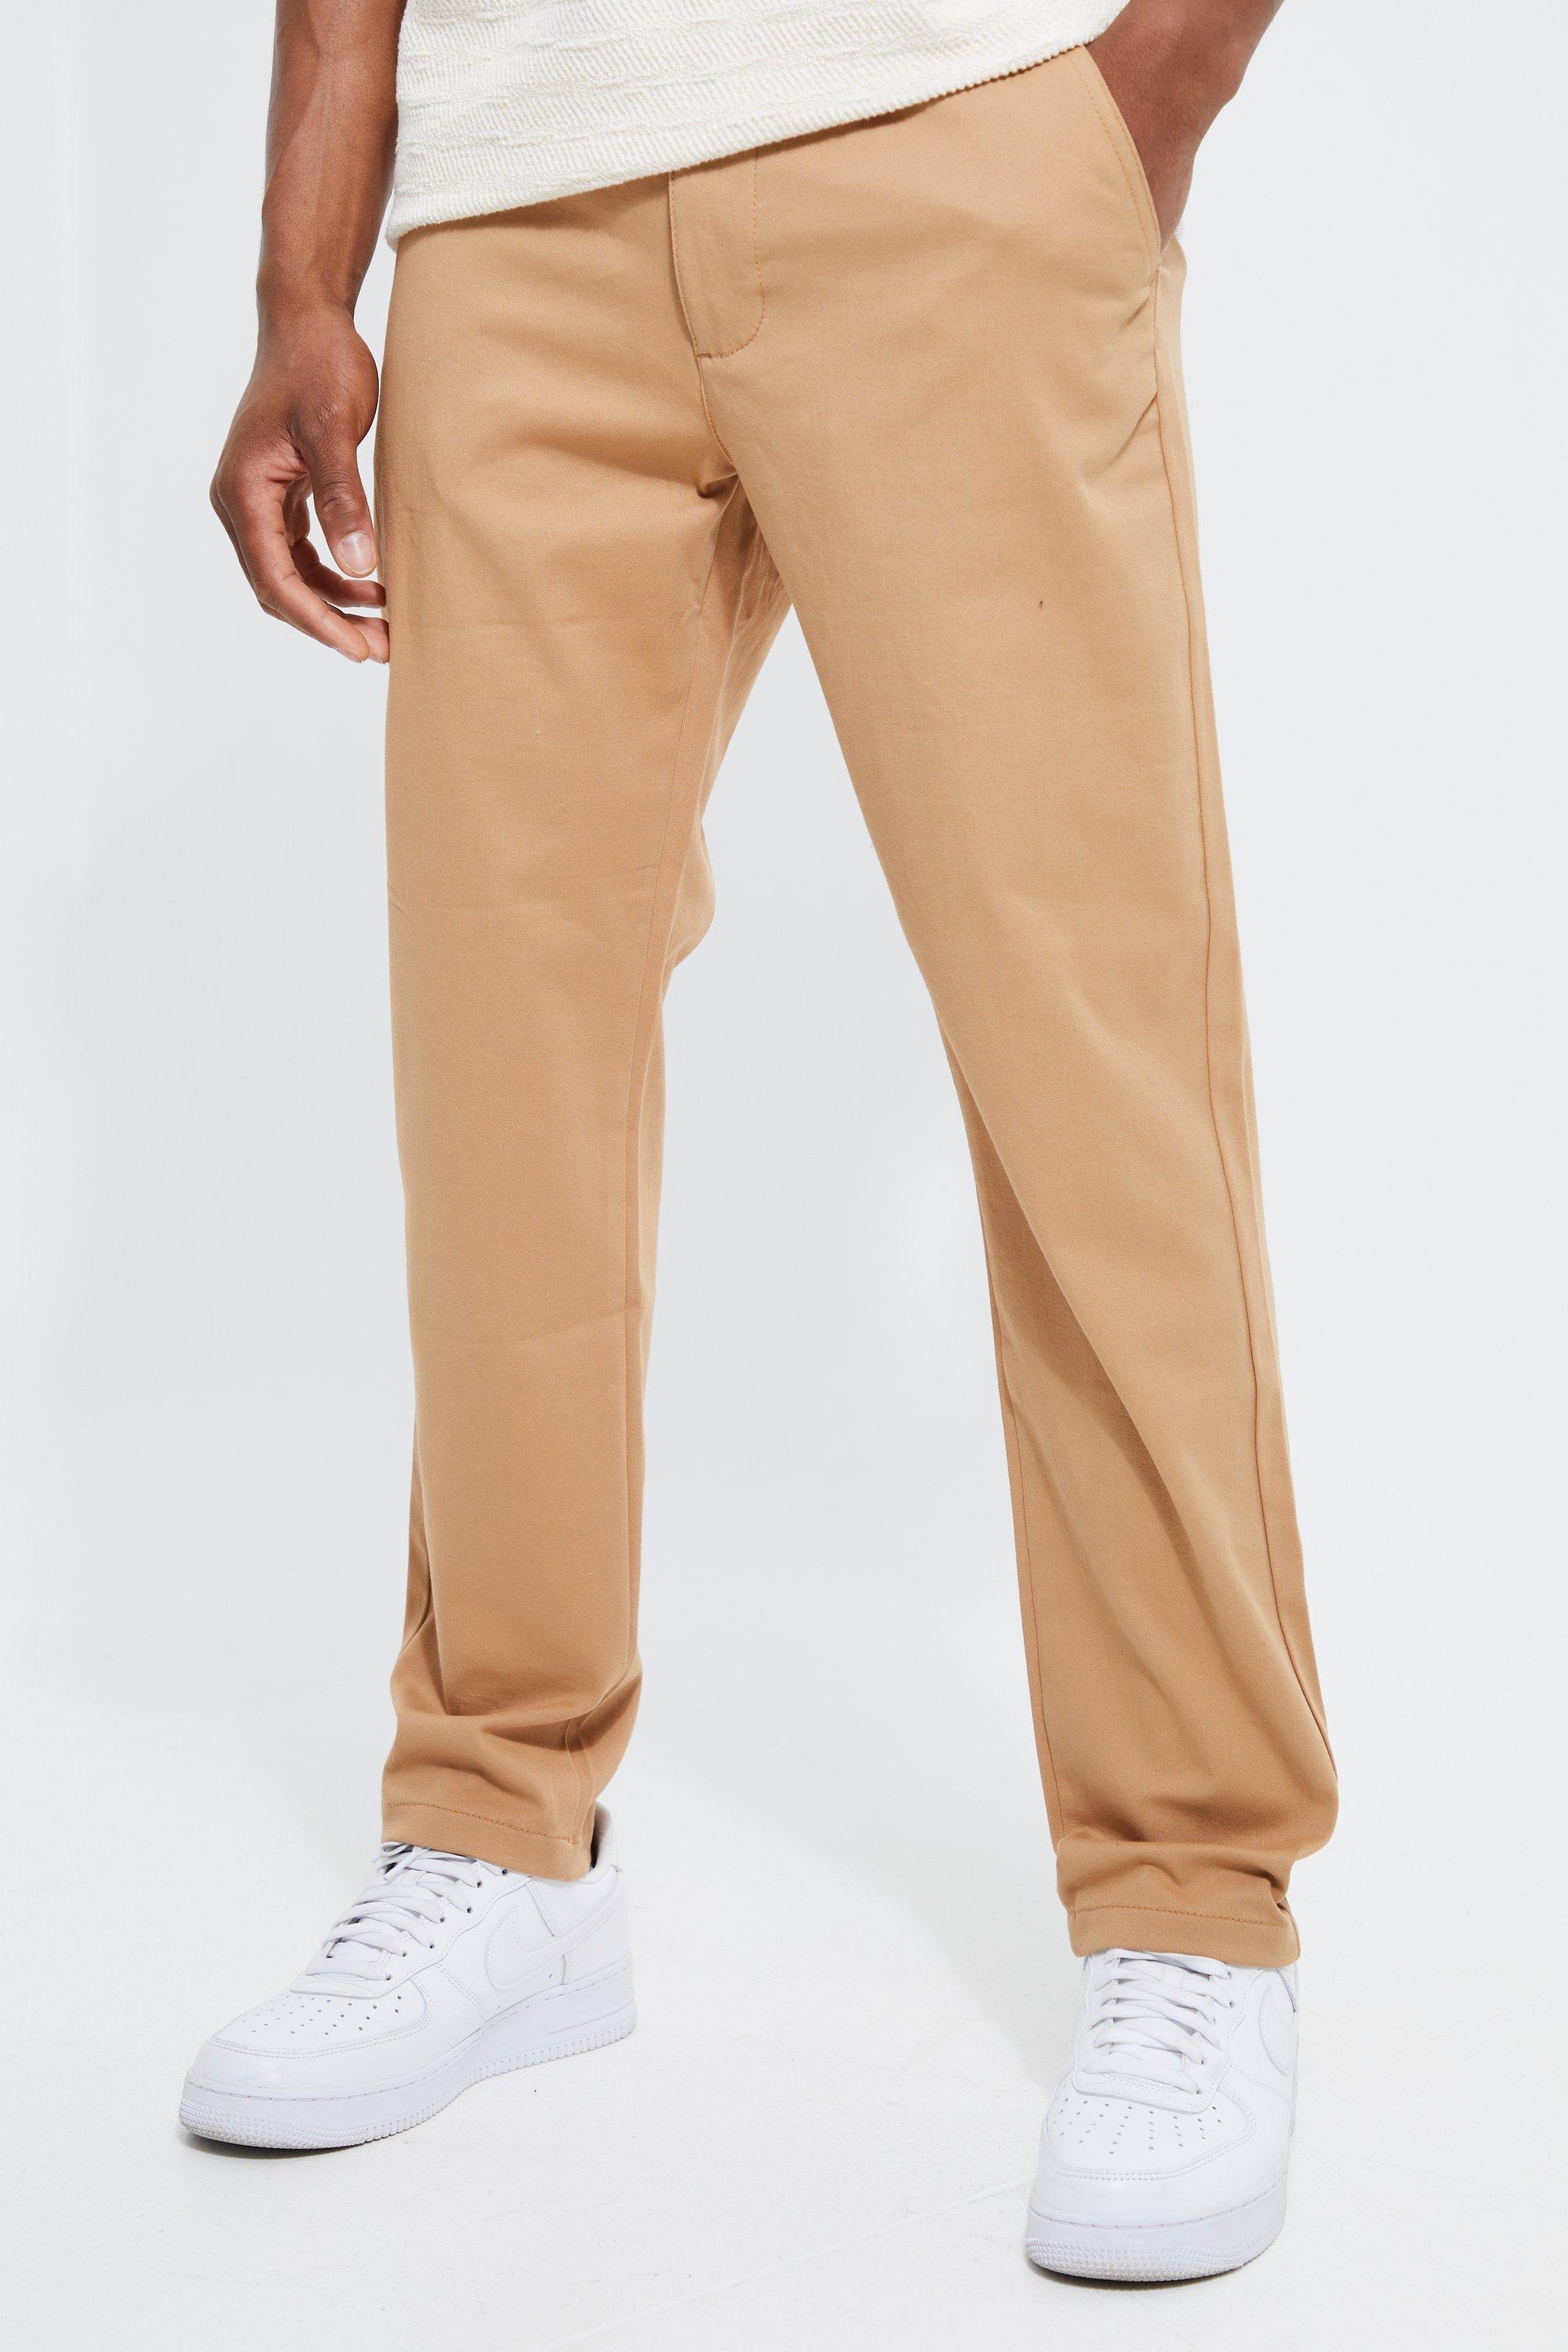 Image of Pantaloni Chino Slim Fit con vita fissa, Brown